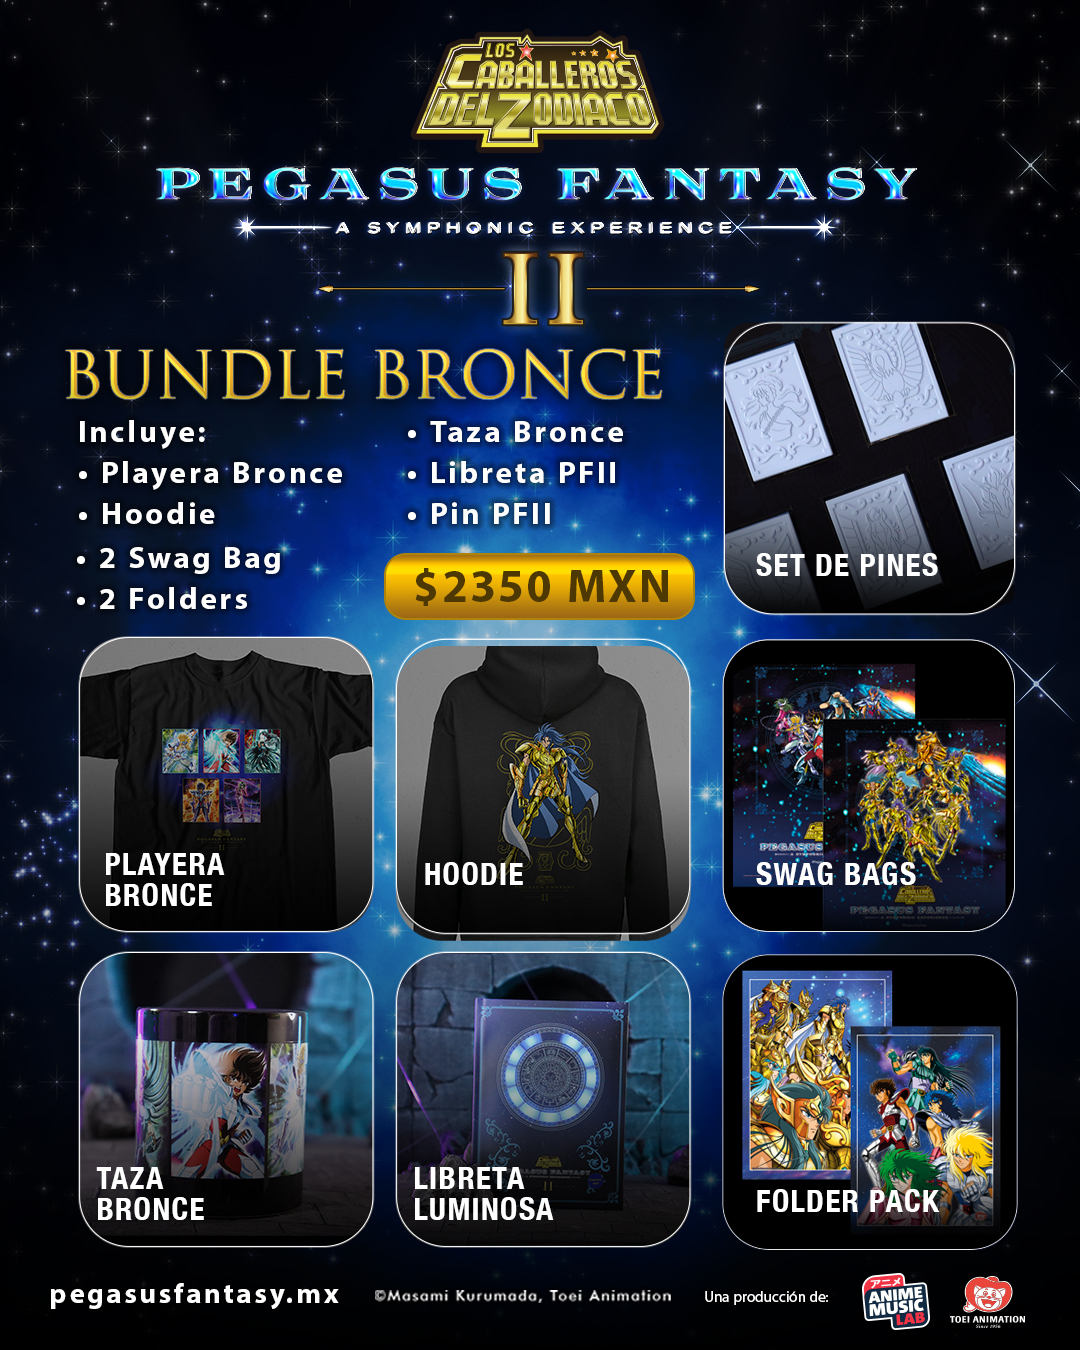 Pegasus Fantasy II - A symphonic experience nos deleita con su mercancía oficial 17